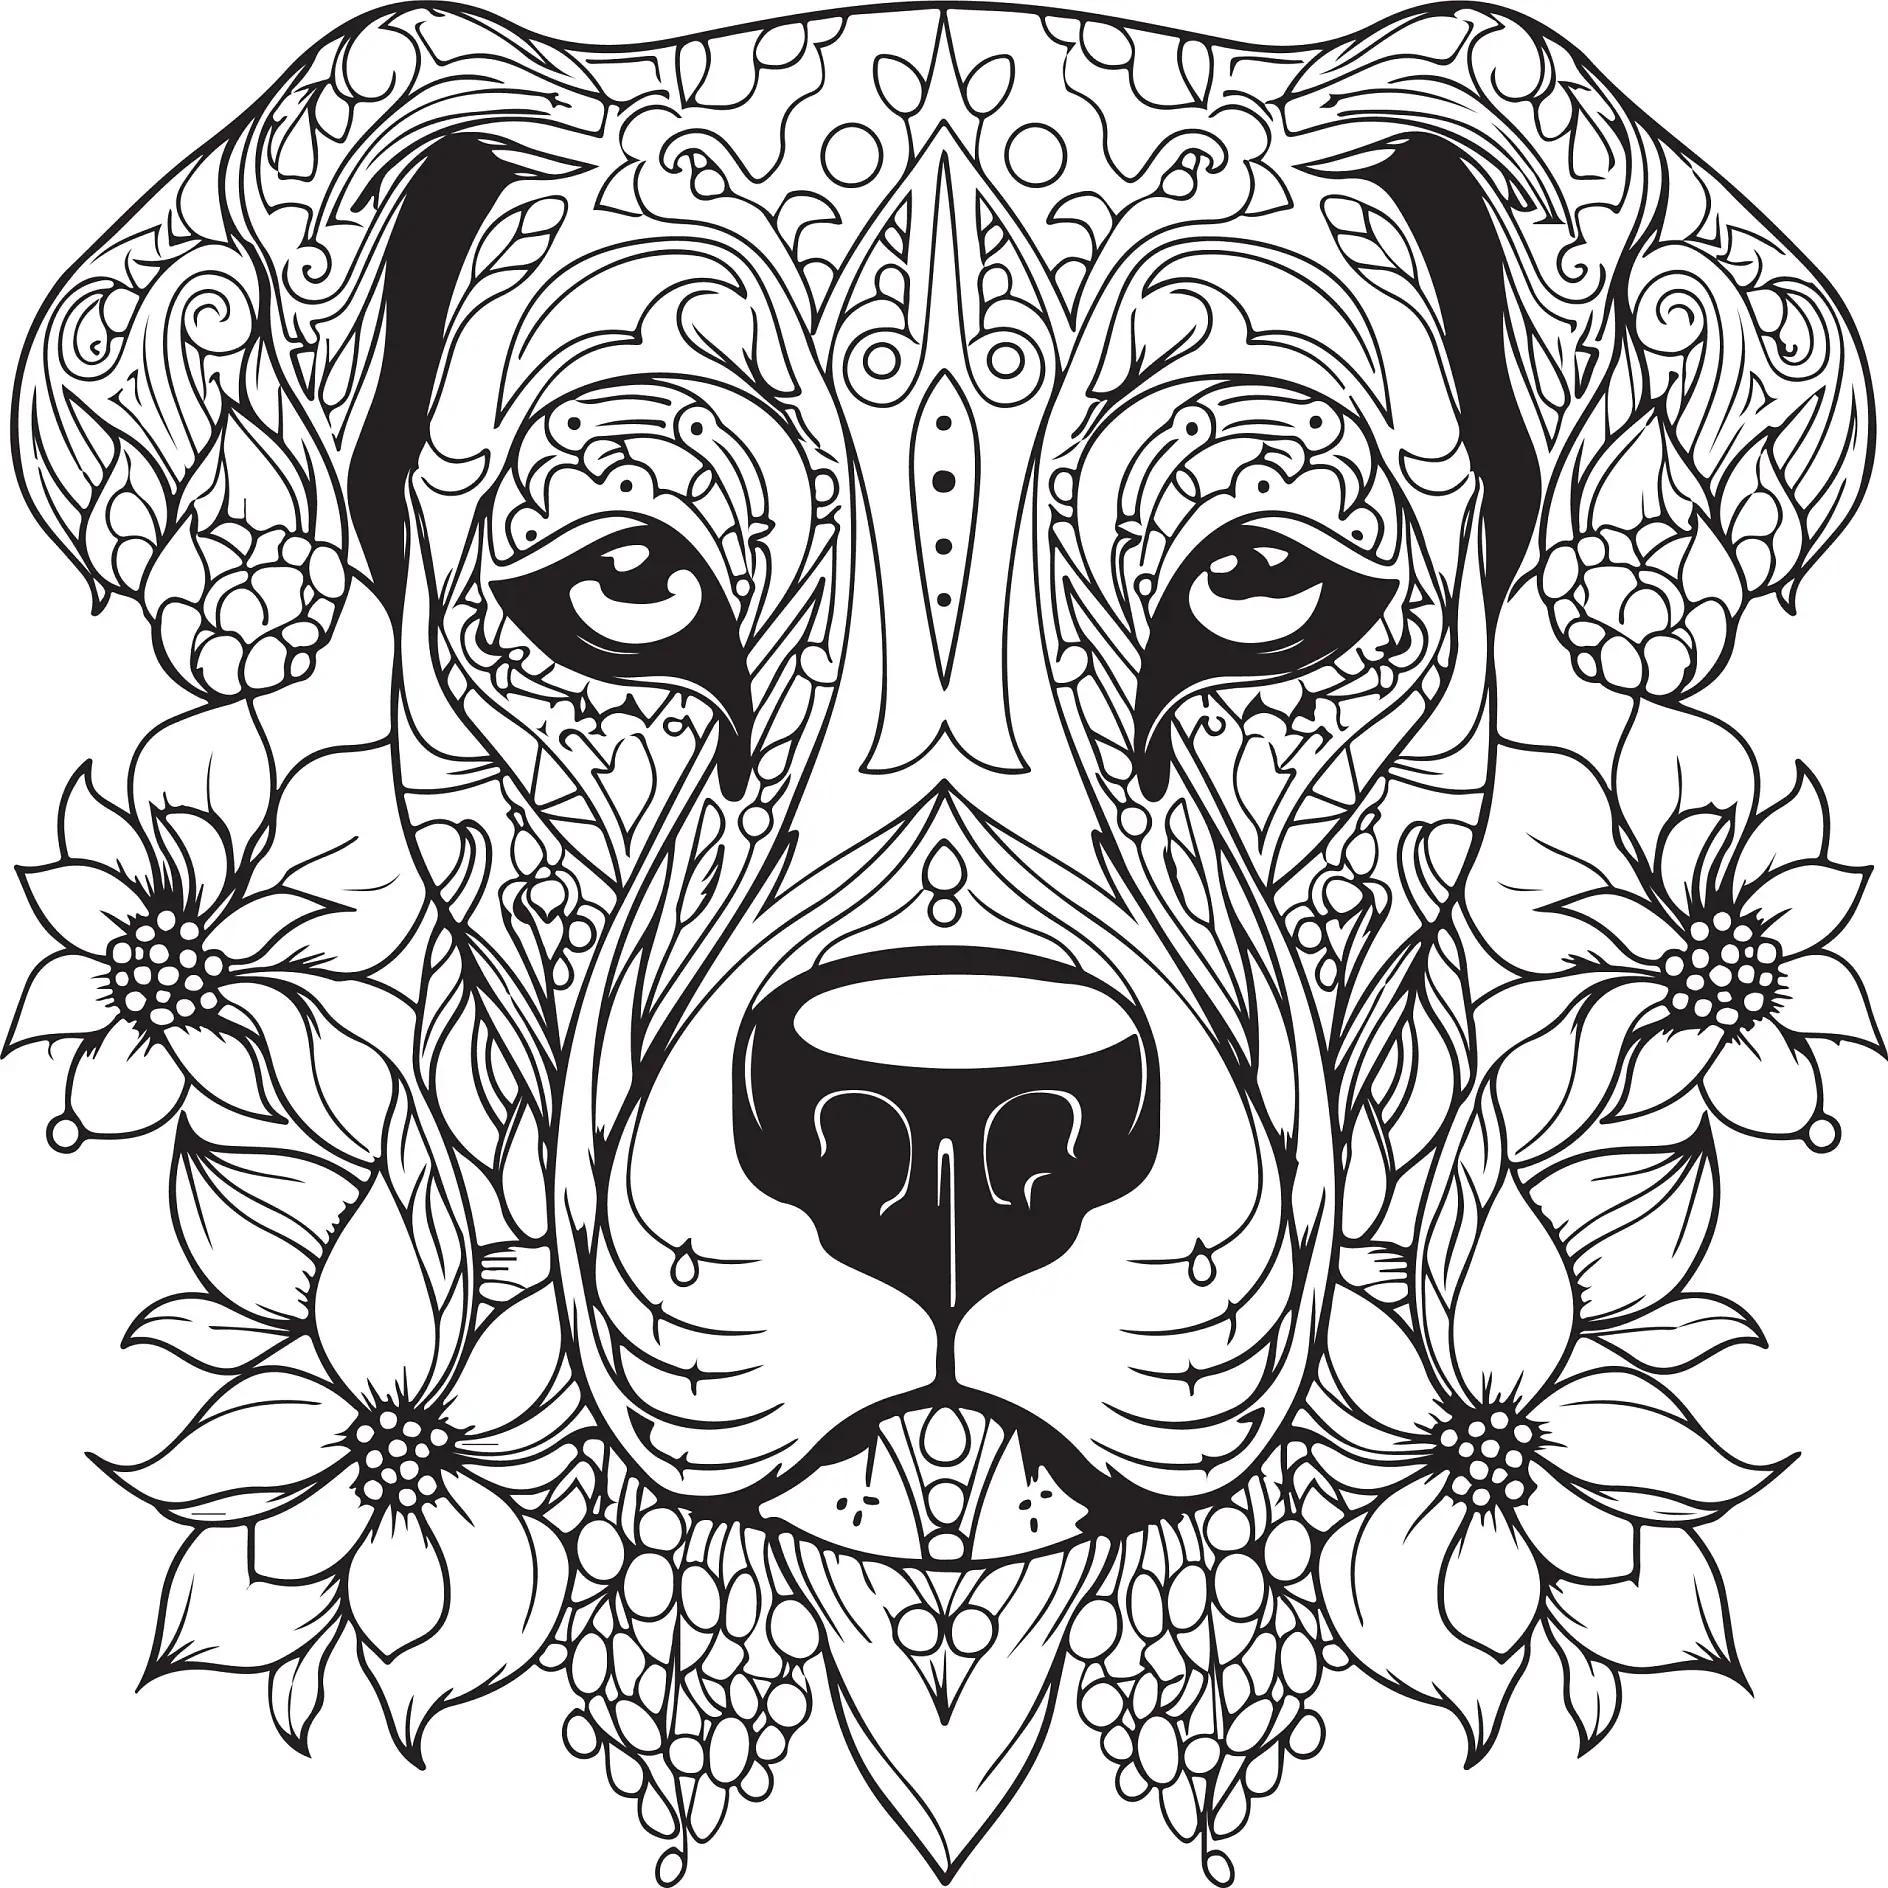 Ausmalbild Mandala mit Hund und Blumenmotiven und detaillierten Mustern